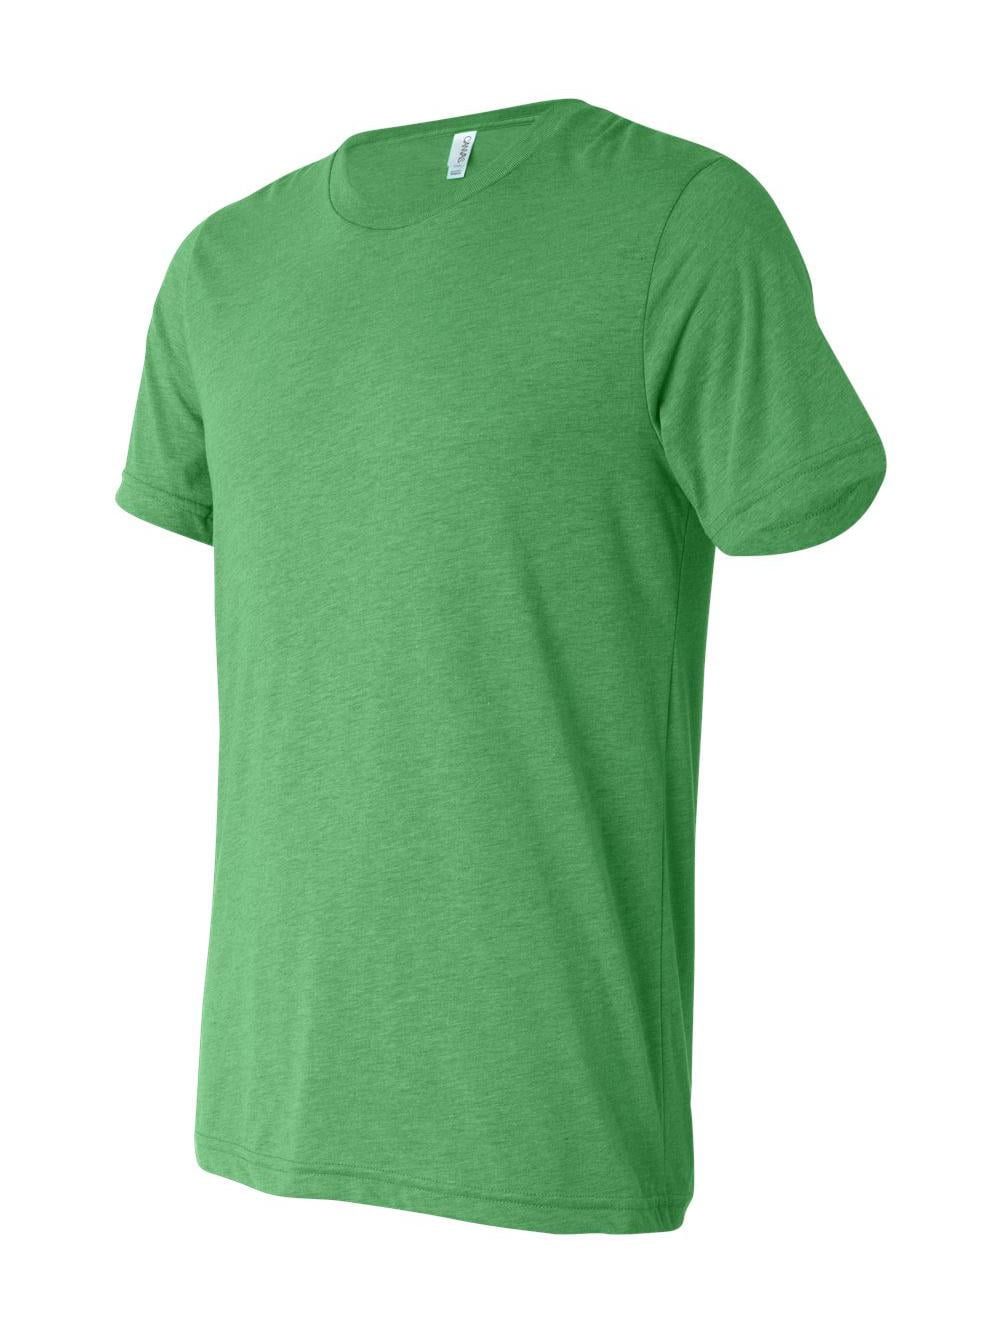 - - Triblend TRIBLEND OATMEAL Unisex T-Shirt 2XL